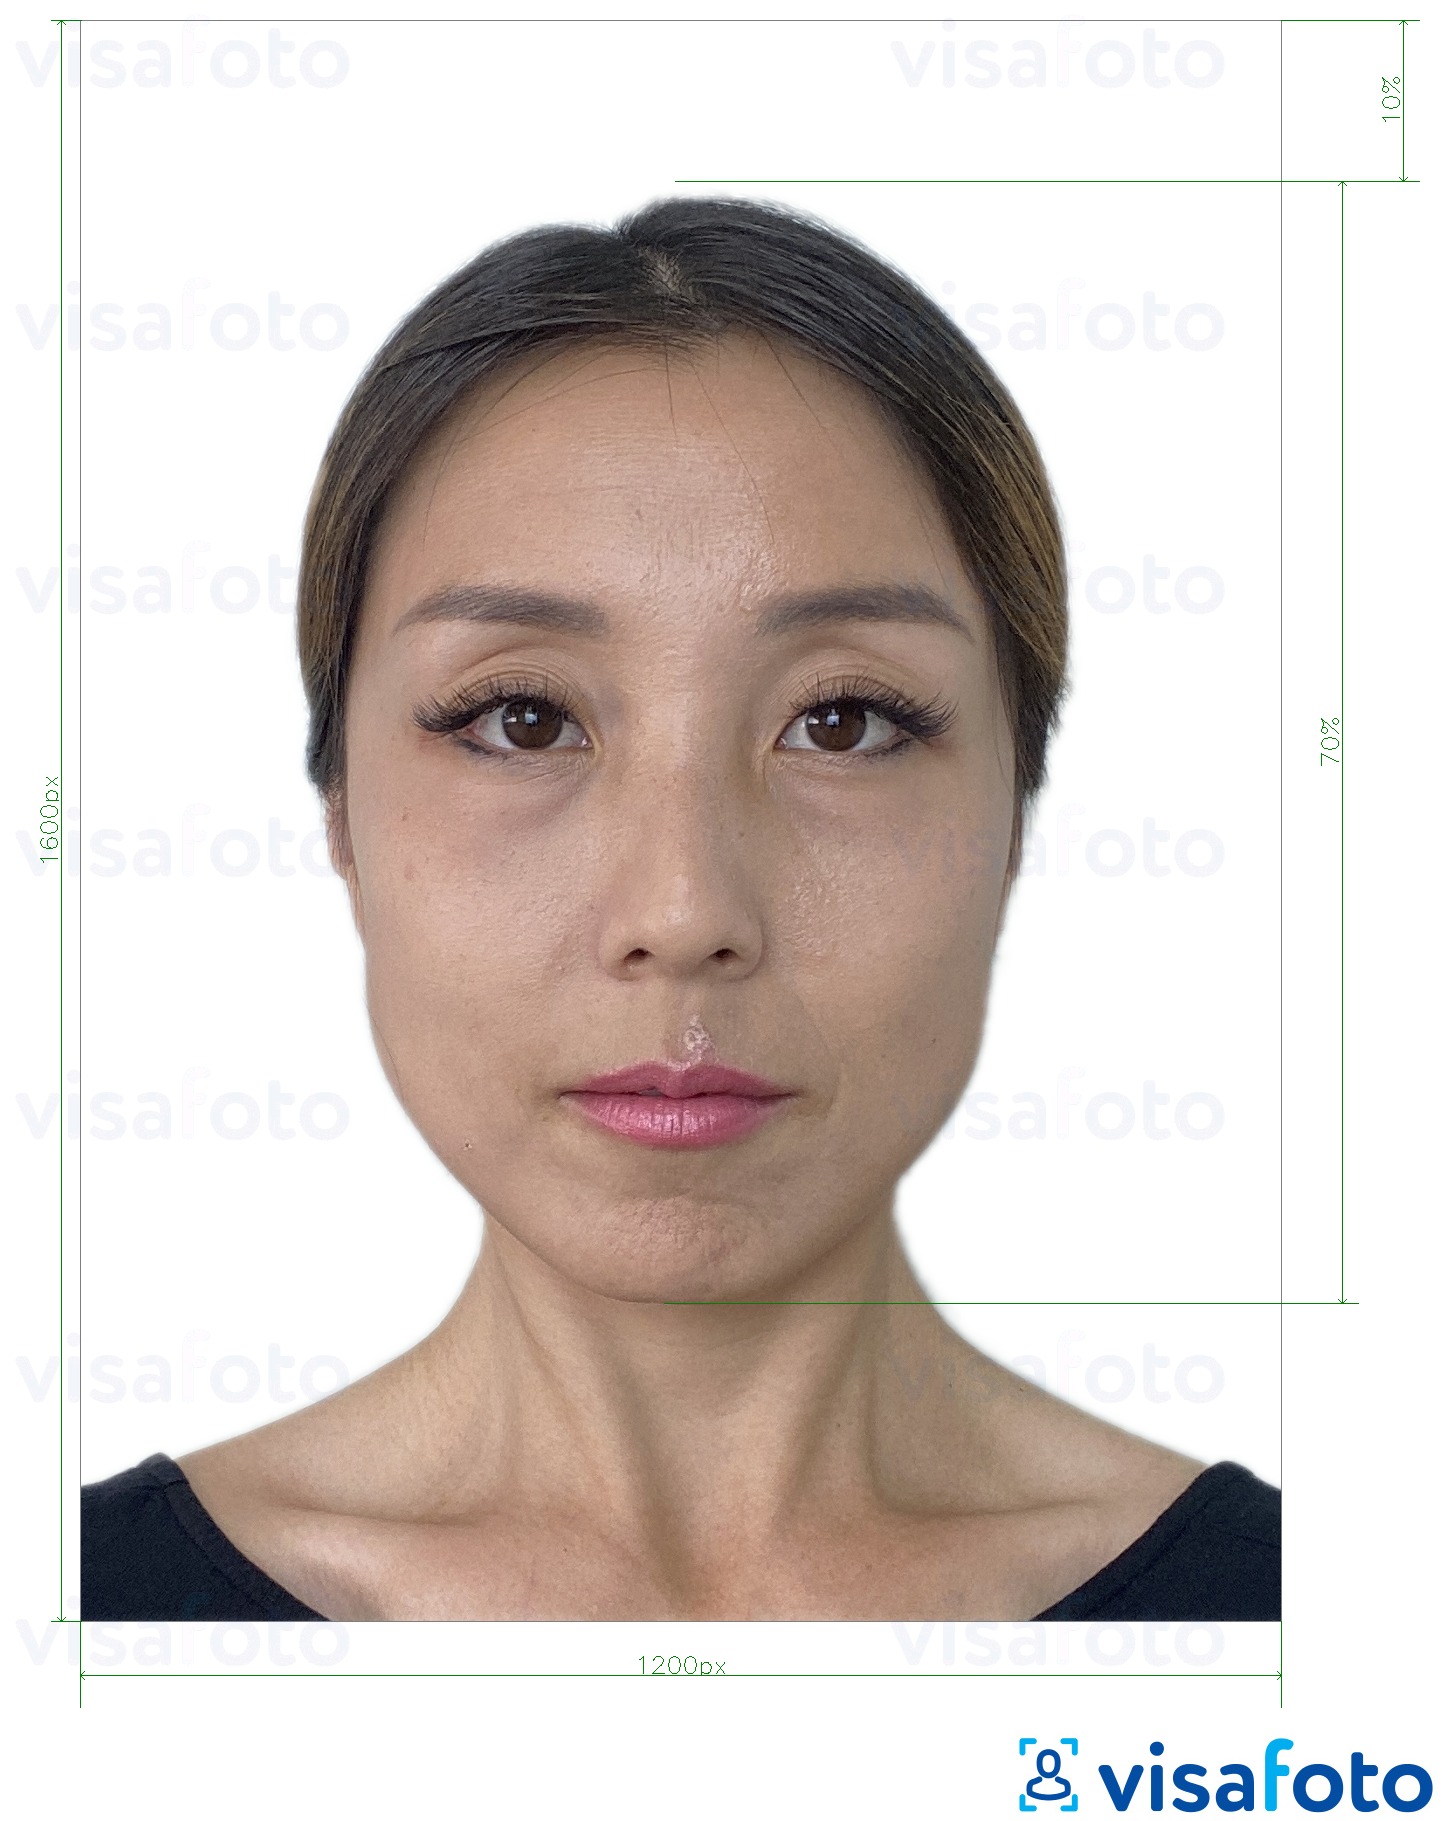 Ejemplo de foto para Hong Kong online e-visa 1200x1600 pixeles con la especificación del tamaño exacto